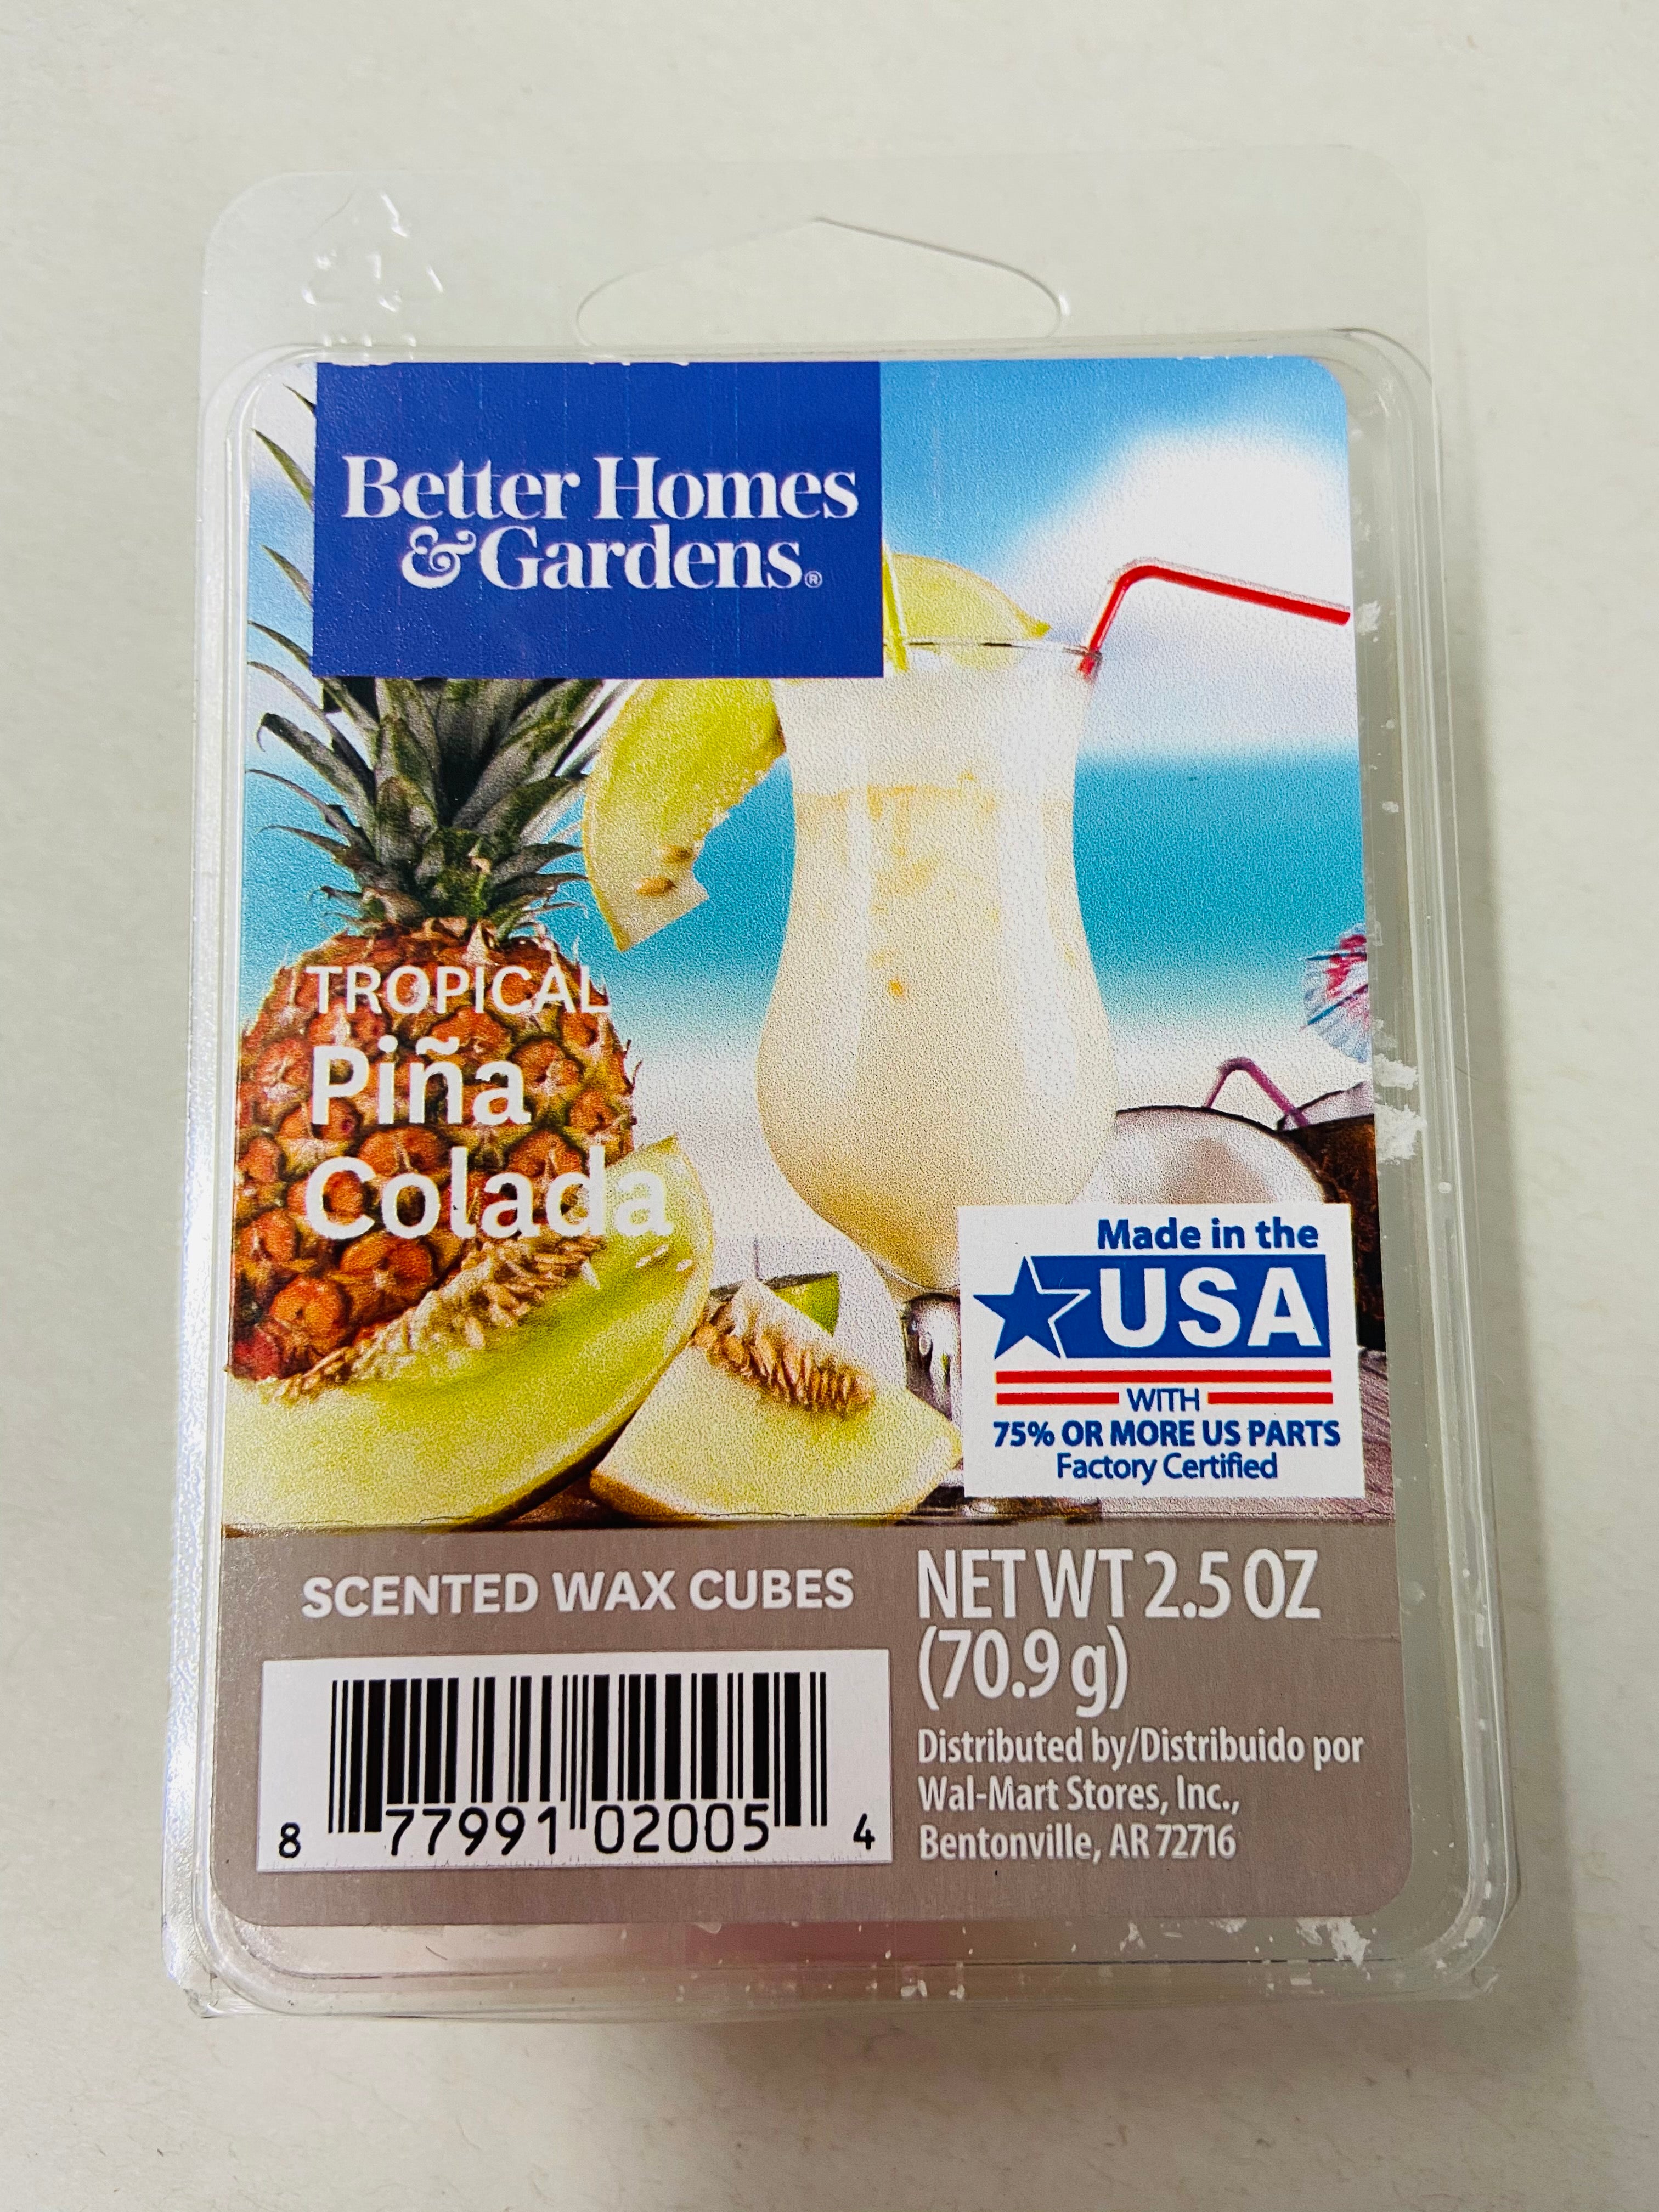 Better Homes & Gardens Wax Melts 🇺🇸 USA EXCLUSIVES 🇺🇸 UK SELLER | eBay